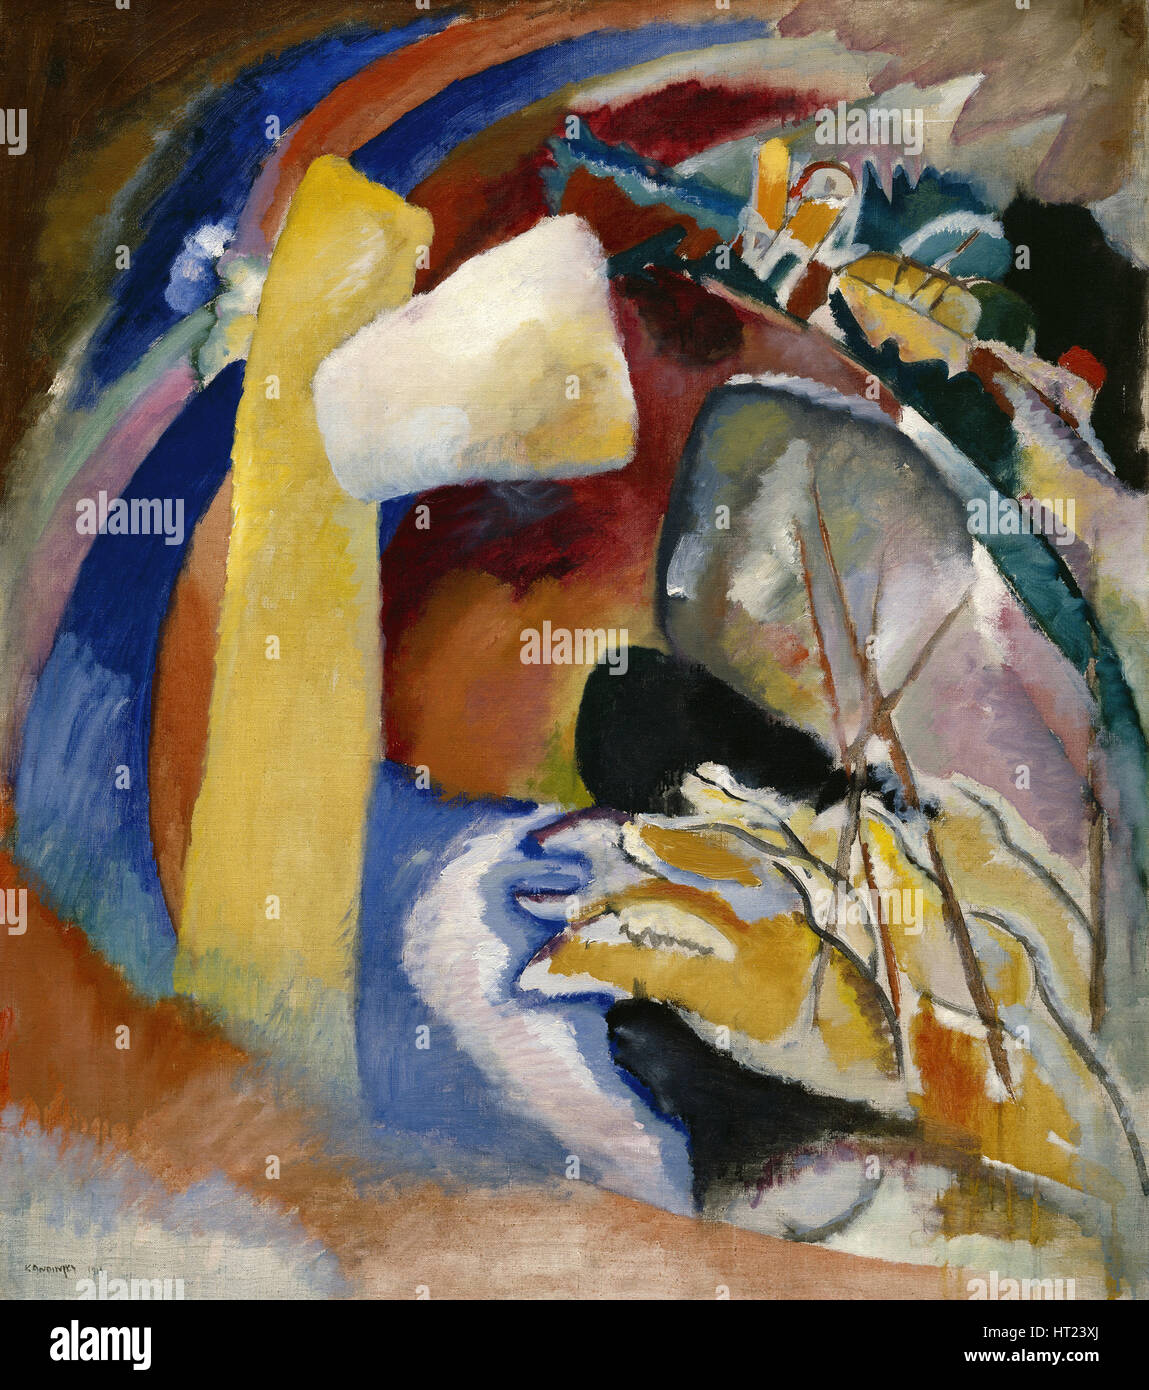 Studie für die Malerei mit weißen Form, 1913. Künstler: Kandinsky, Wassily Wassiljewitsch (1866-1944) Stockfoto